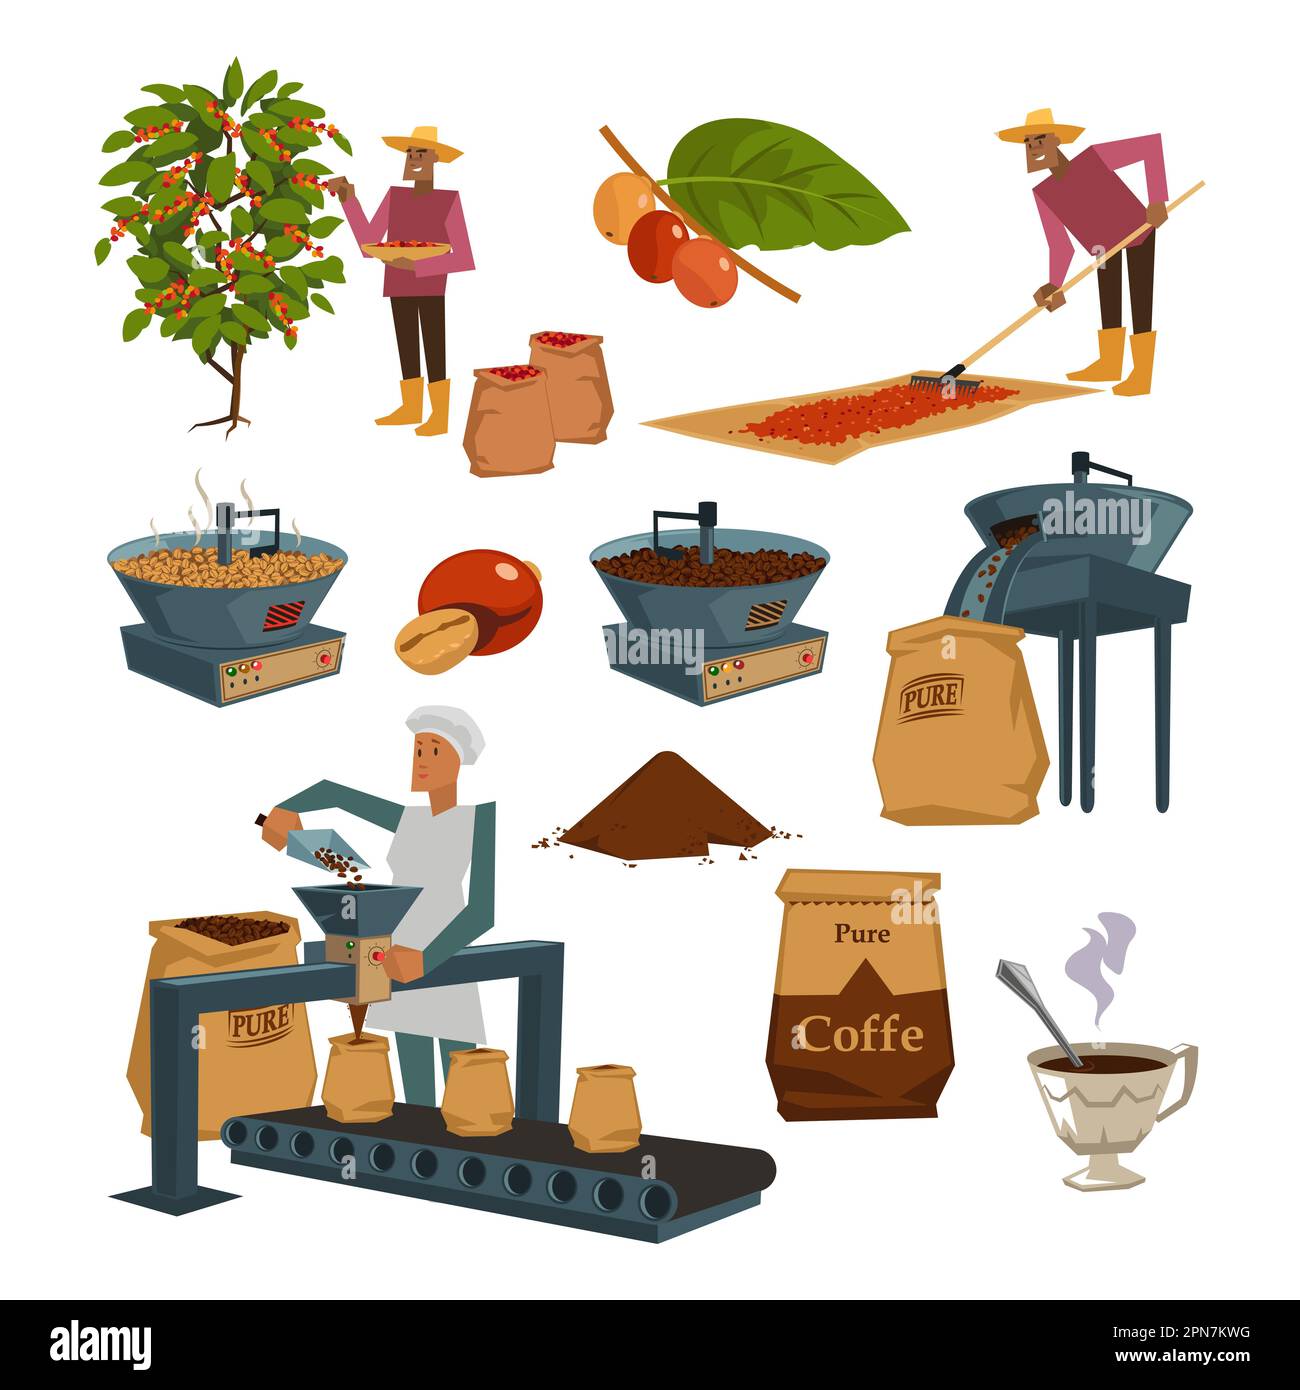 Zeichentrickset für die Kaffeeherstellung Stock Vektor